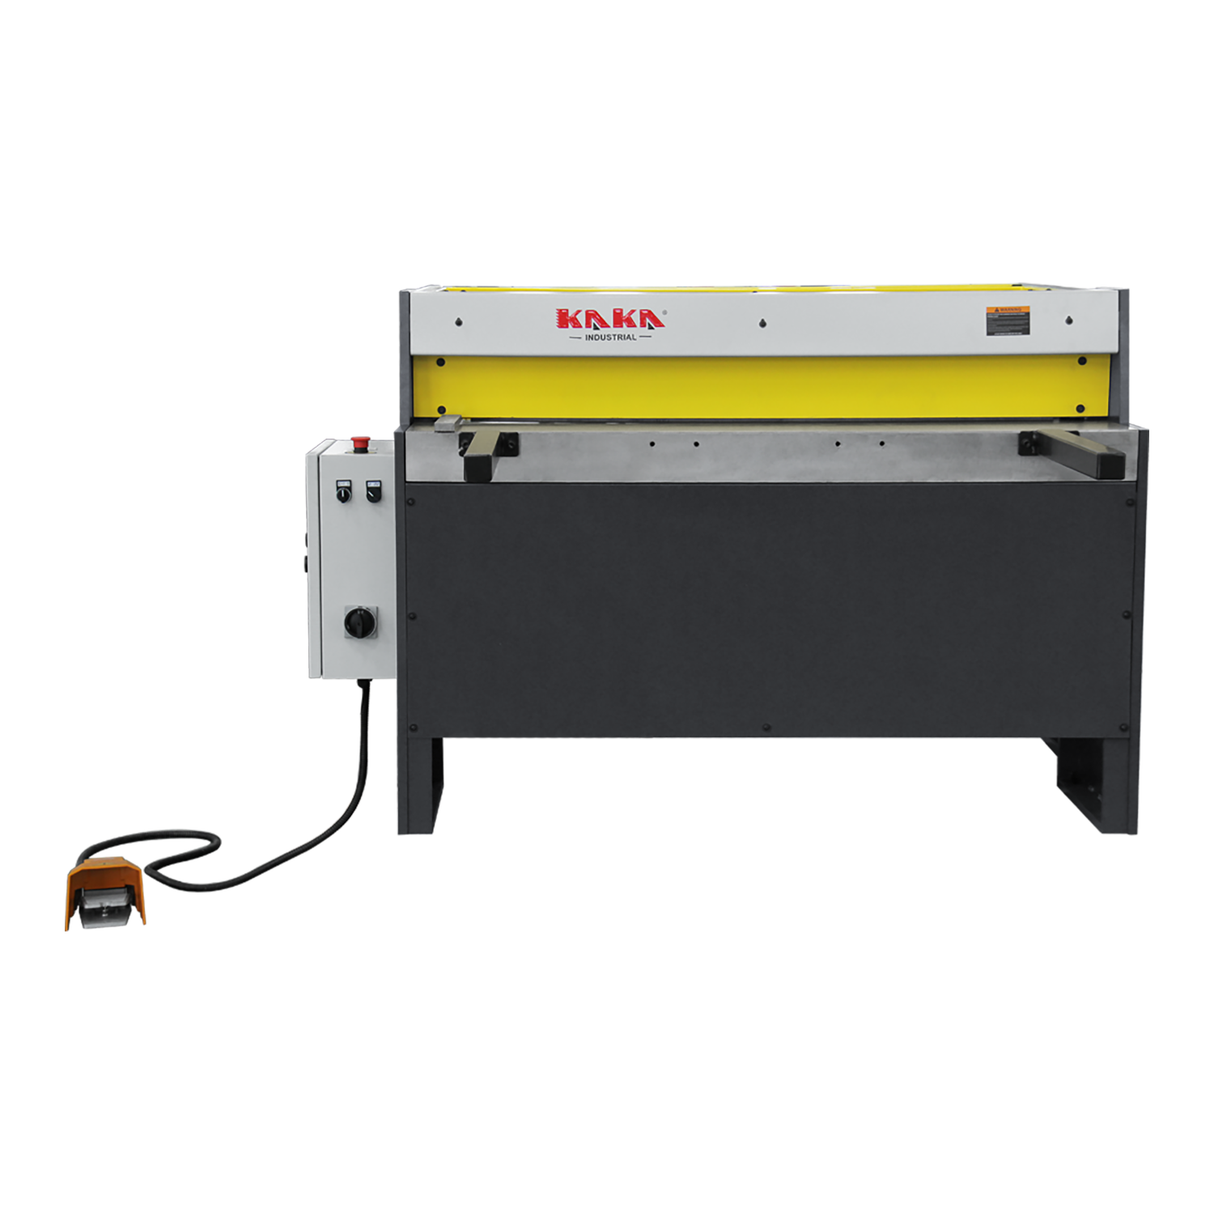 KANG industrial Q11-4911 Electric metal shearing machine